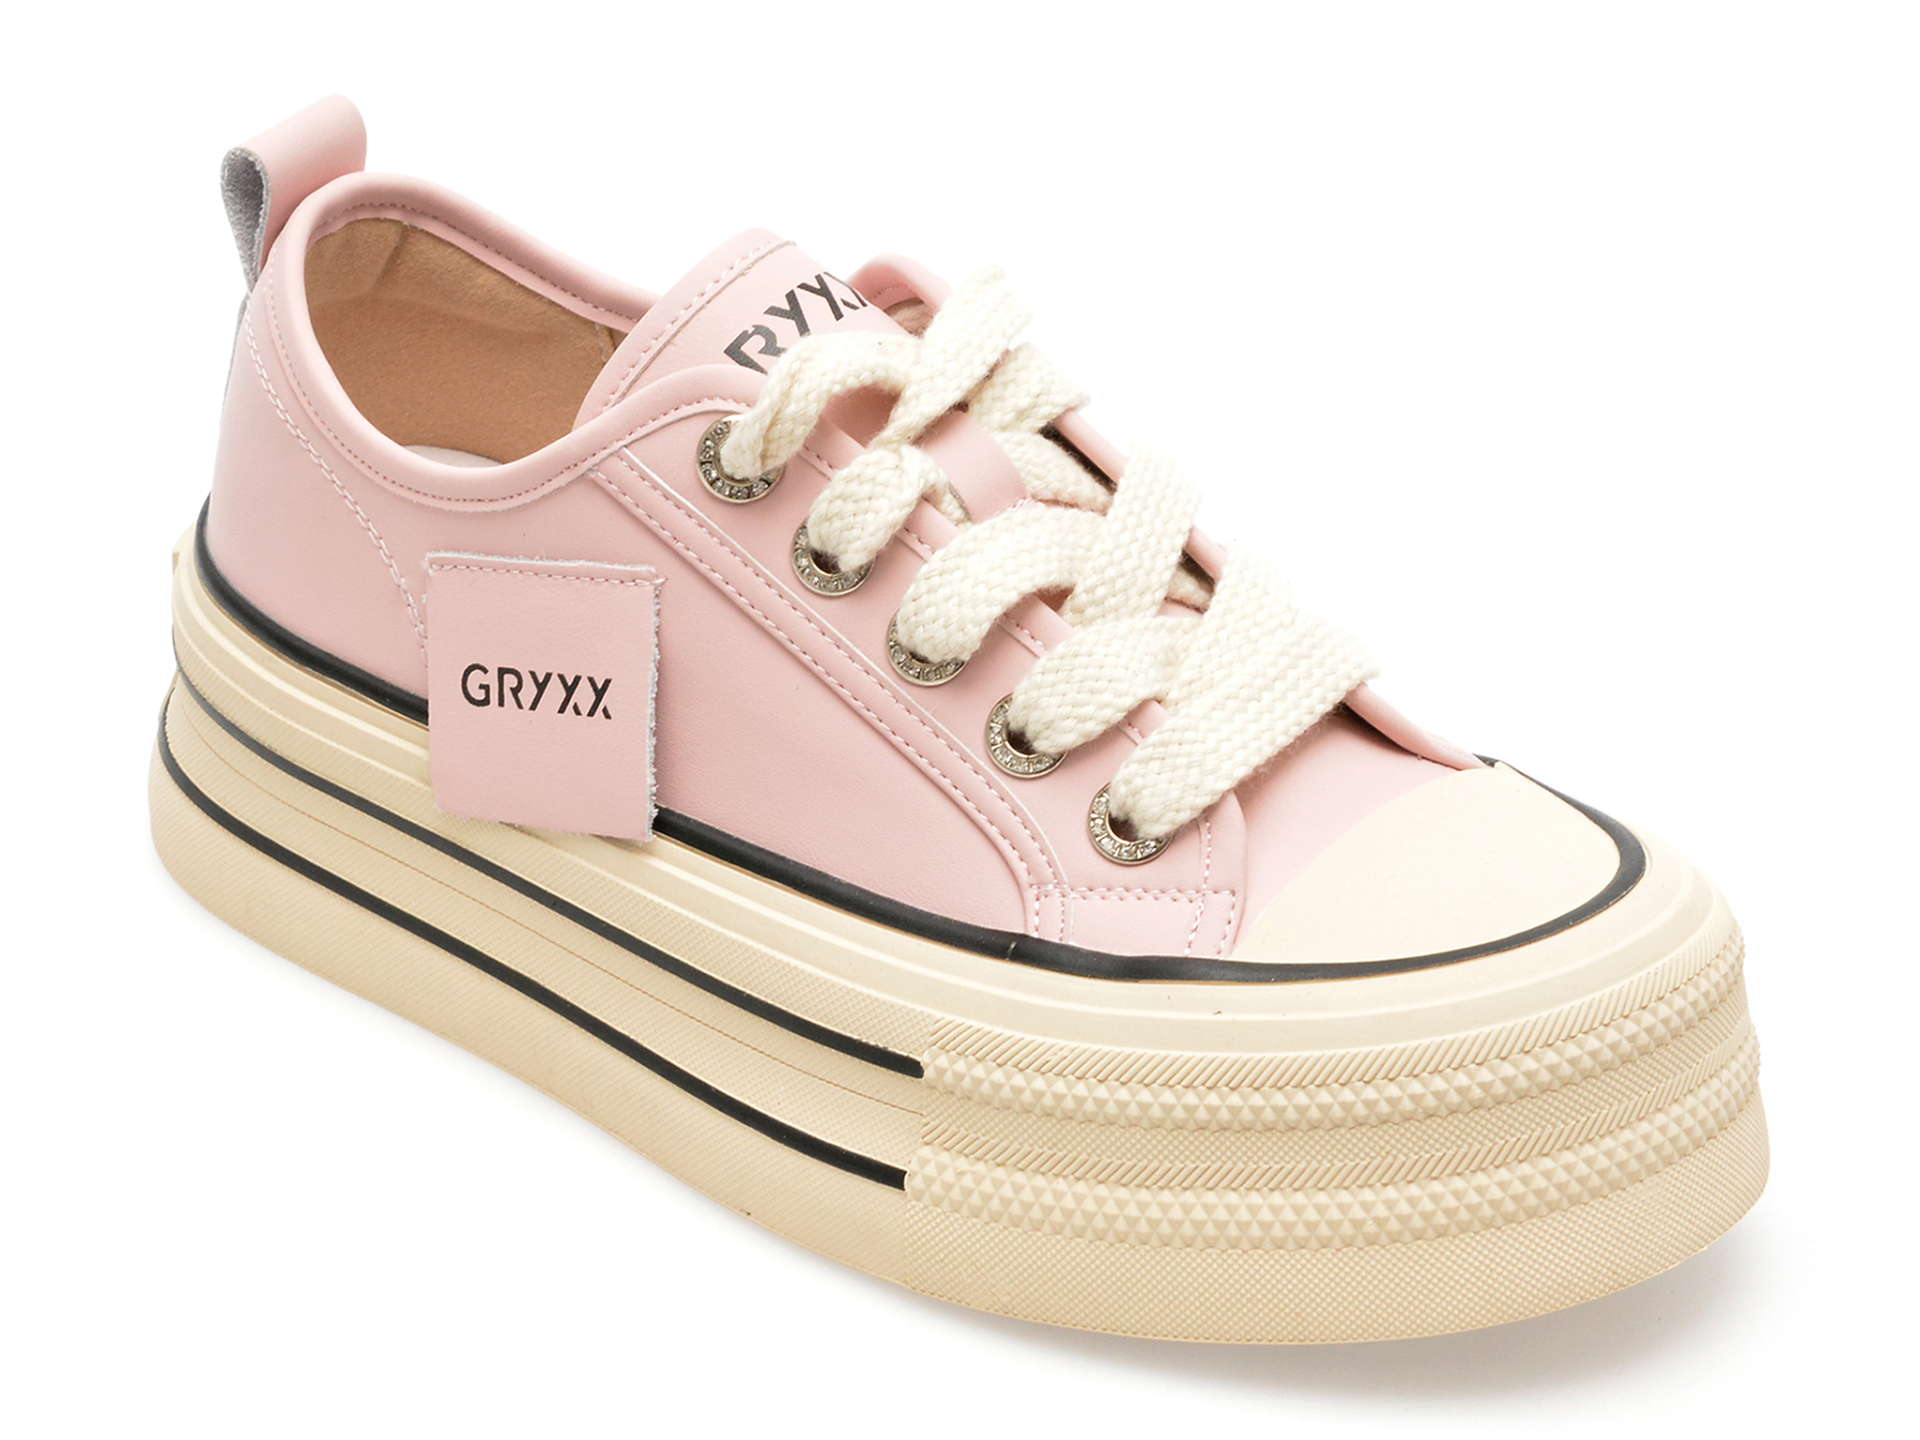 Pantofi GRYXX roz, 3013, din piele naturala imagine reduceri black friday 2021 Gryxx